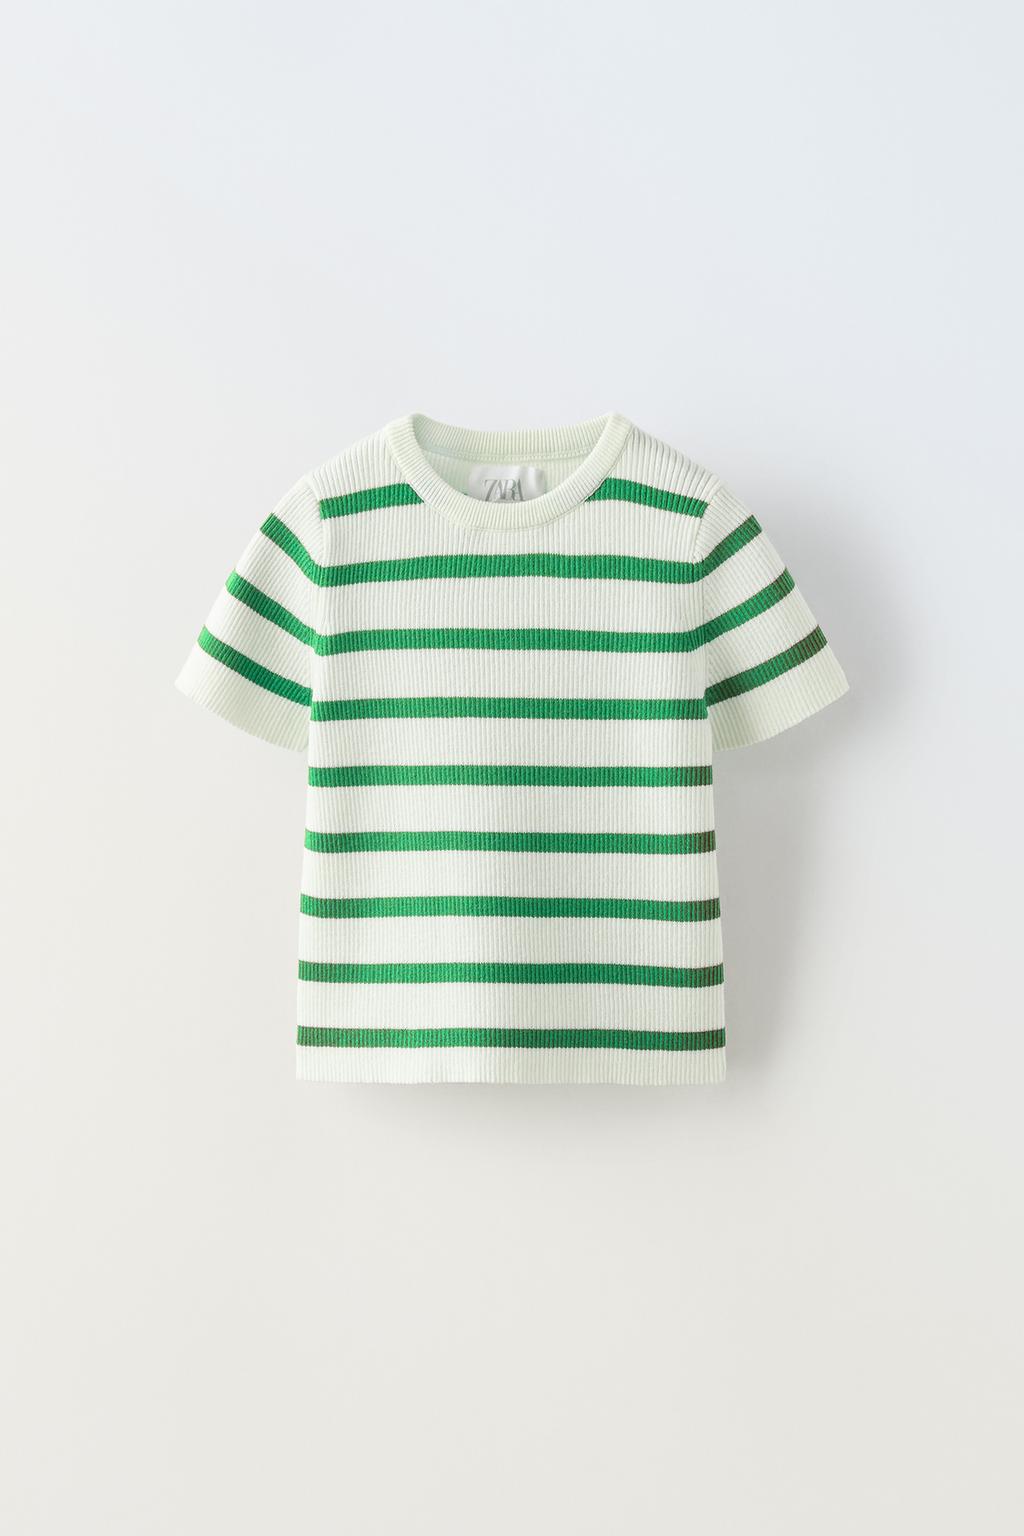 цена Трикотажная футболка в полоску ZARA, экрю/зеленый